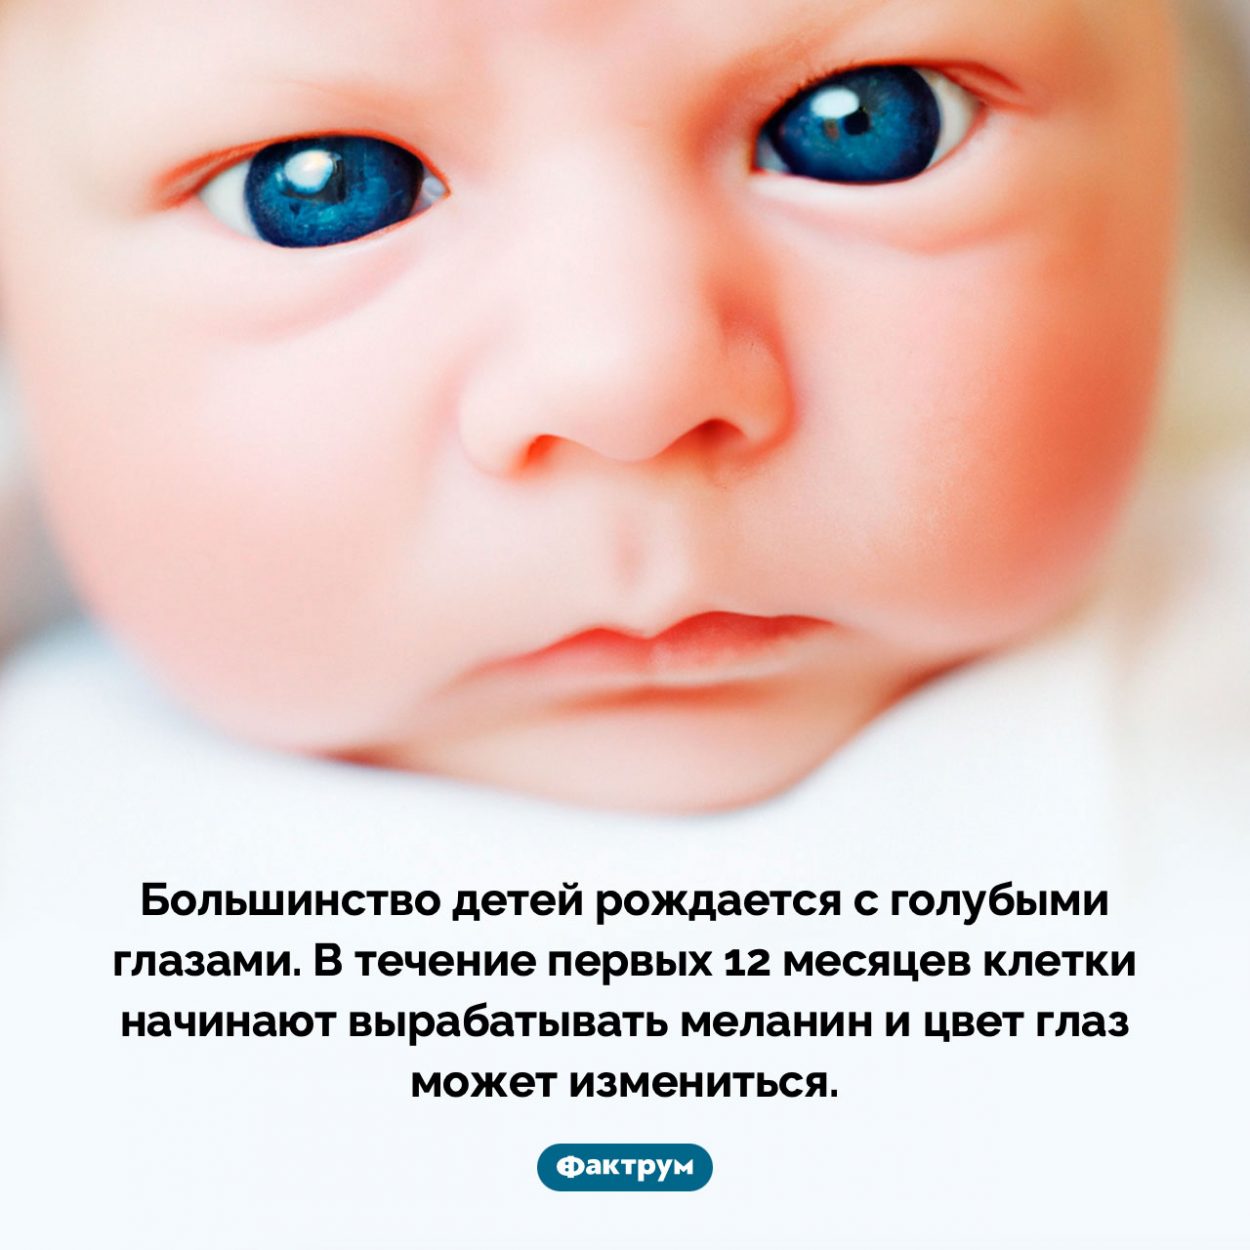 Большинство детей рождается с голубыми глазами. Большинство детей рождается с голубыми глазами. В течение первых 12 месяцев клетки начинают вырабатывать меланин и цвет глаз может измениться.